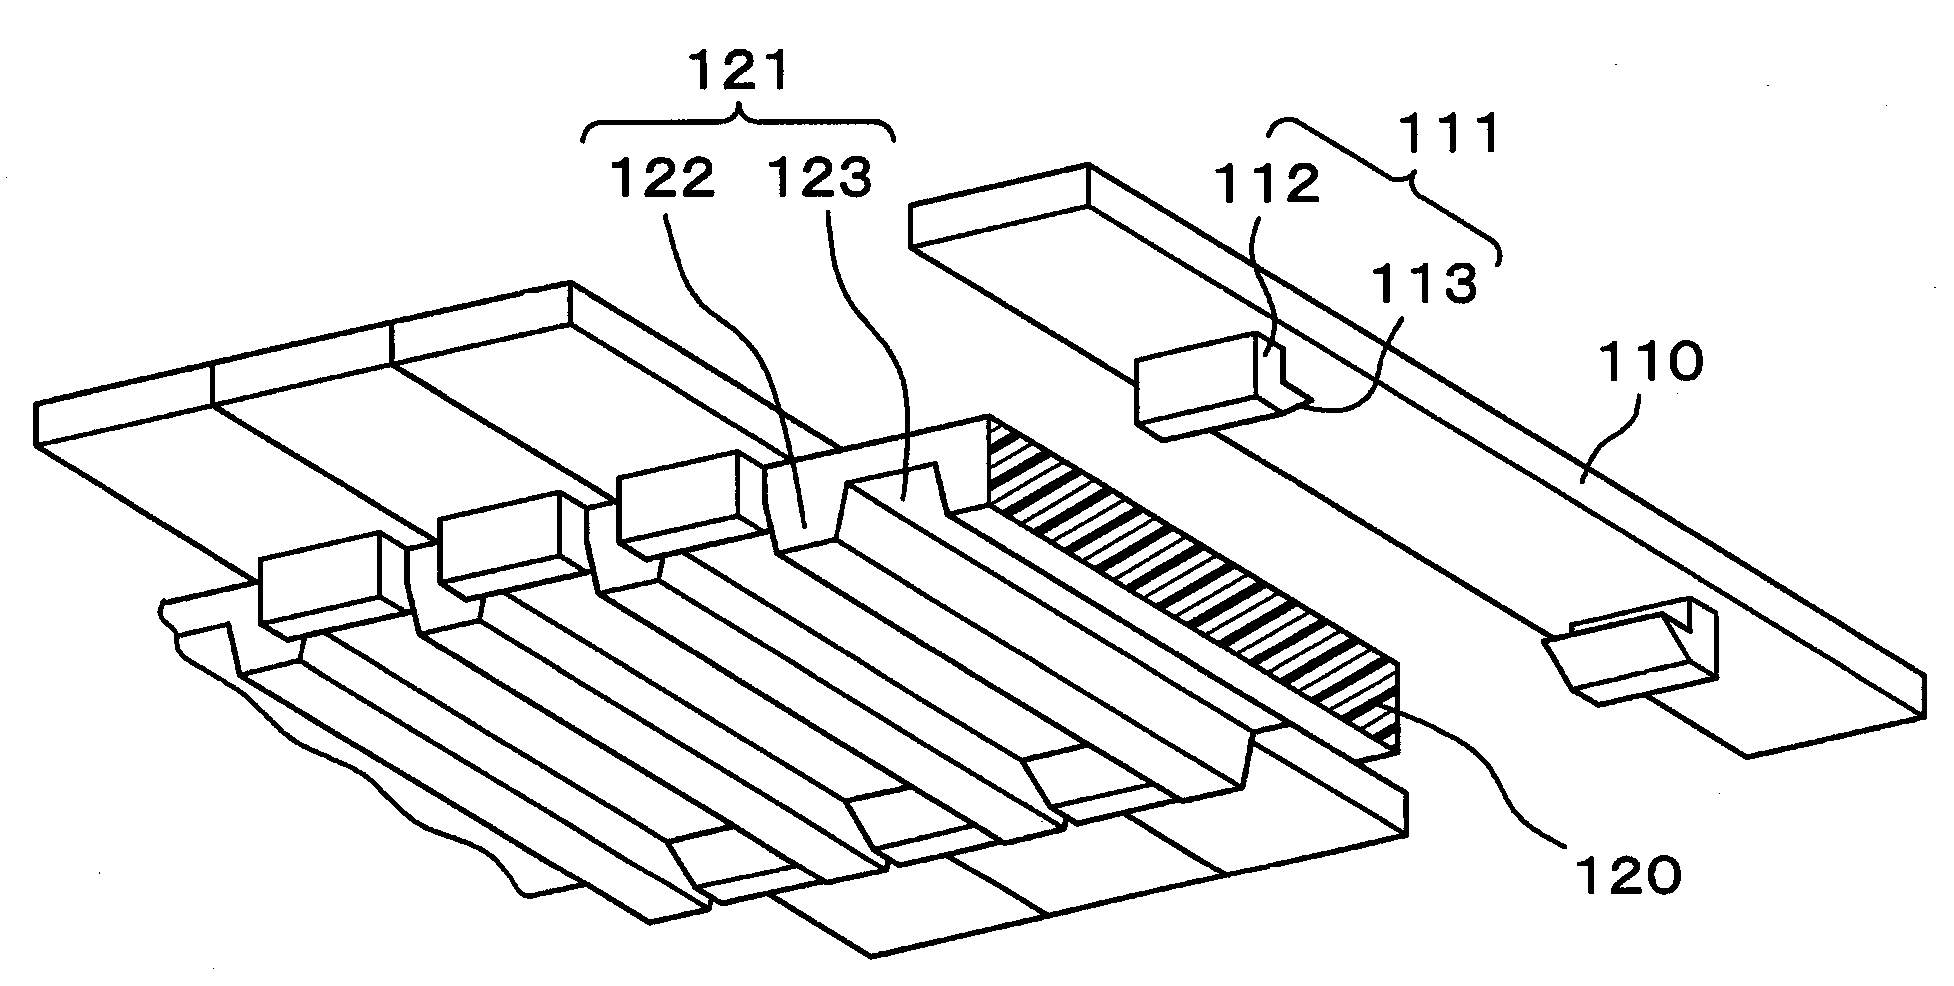 Top plate conveyor device